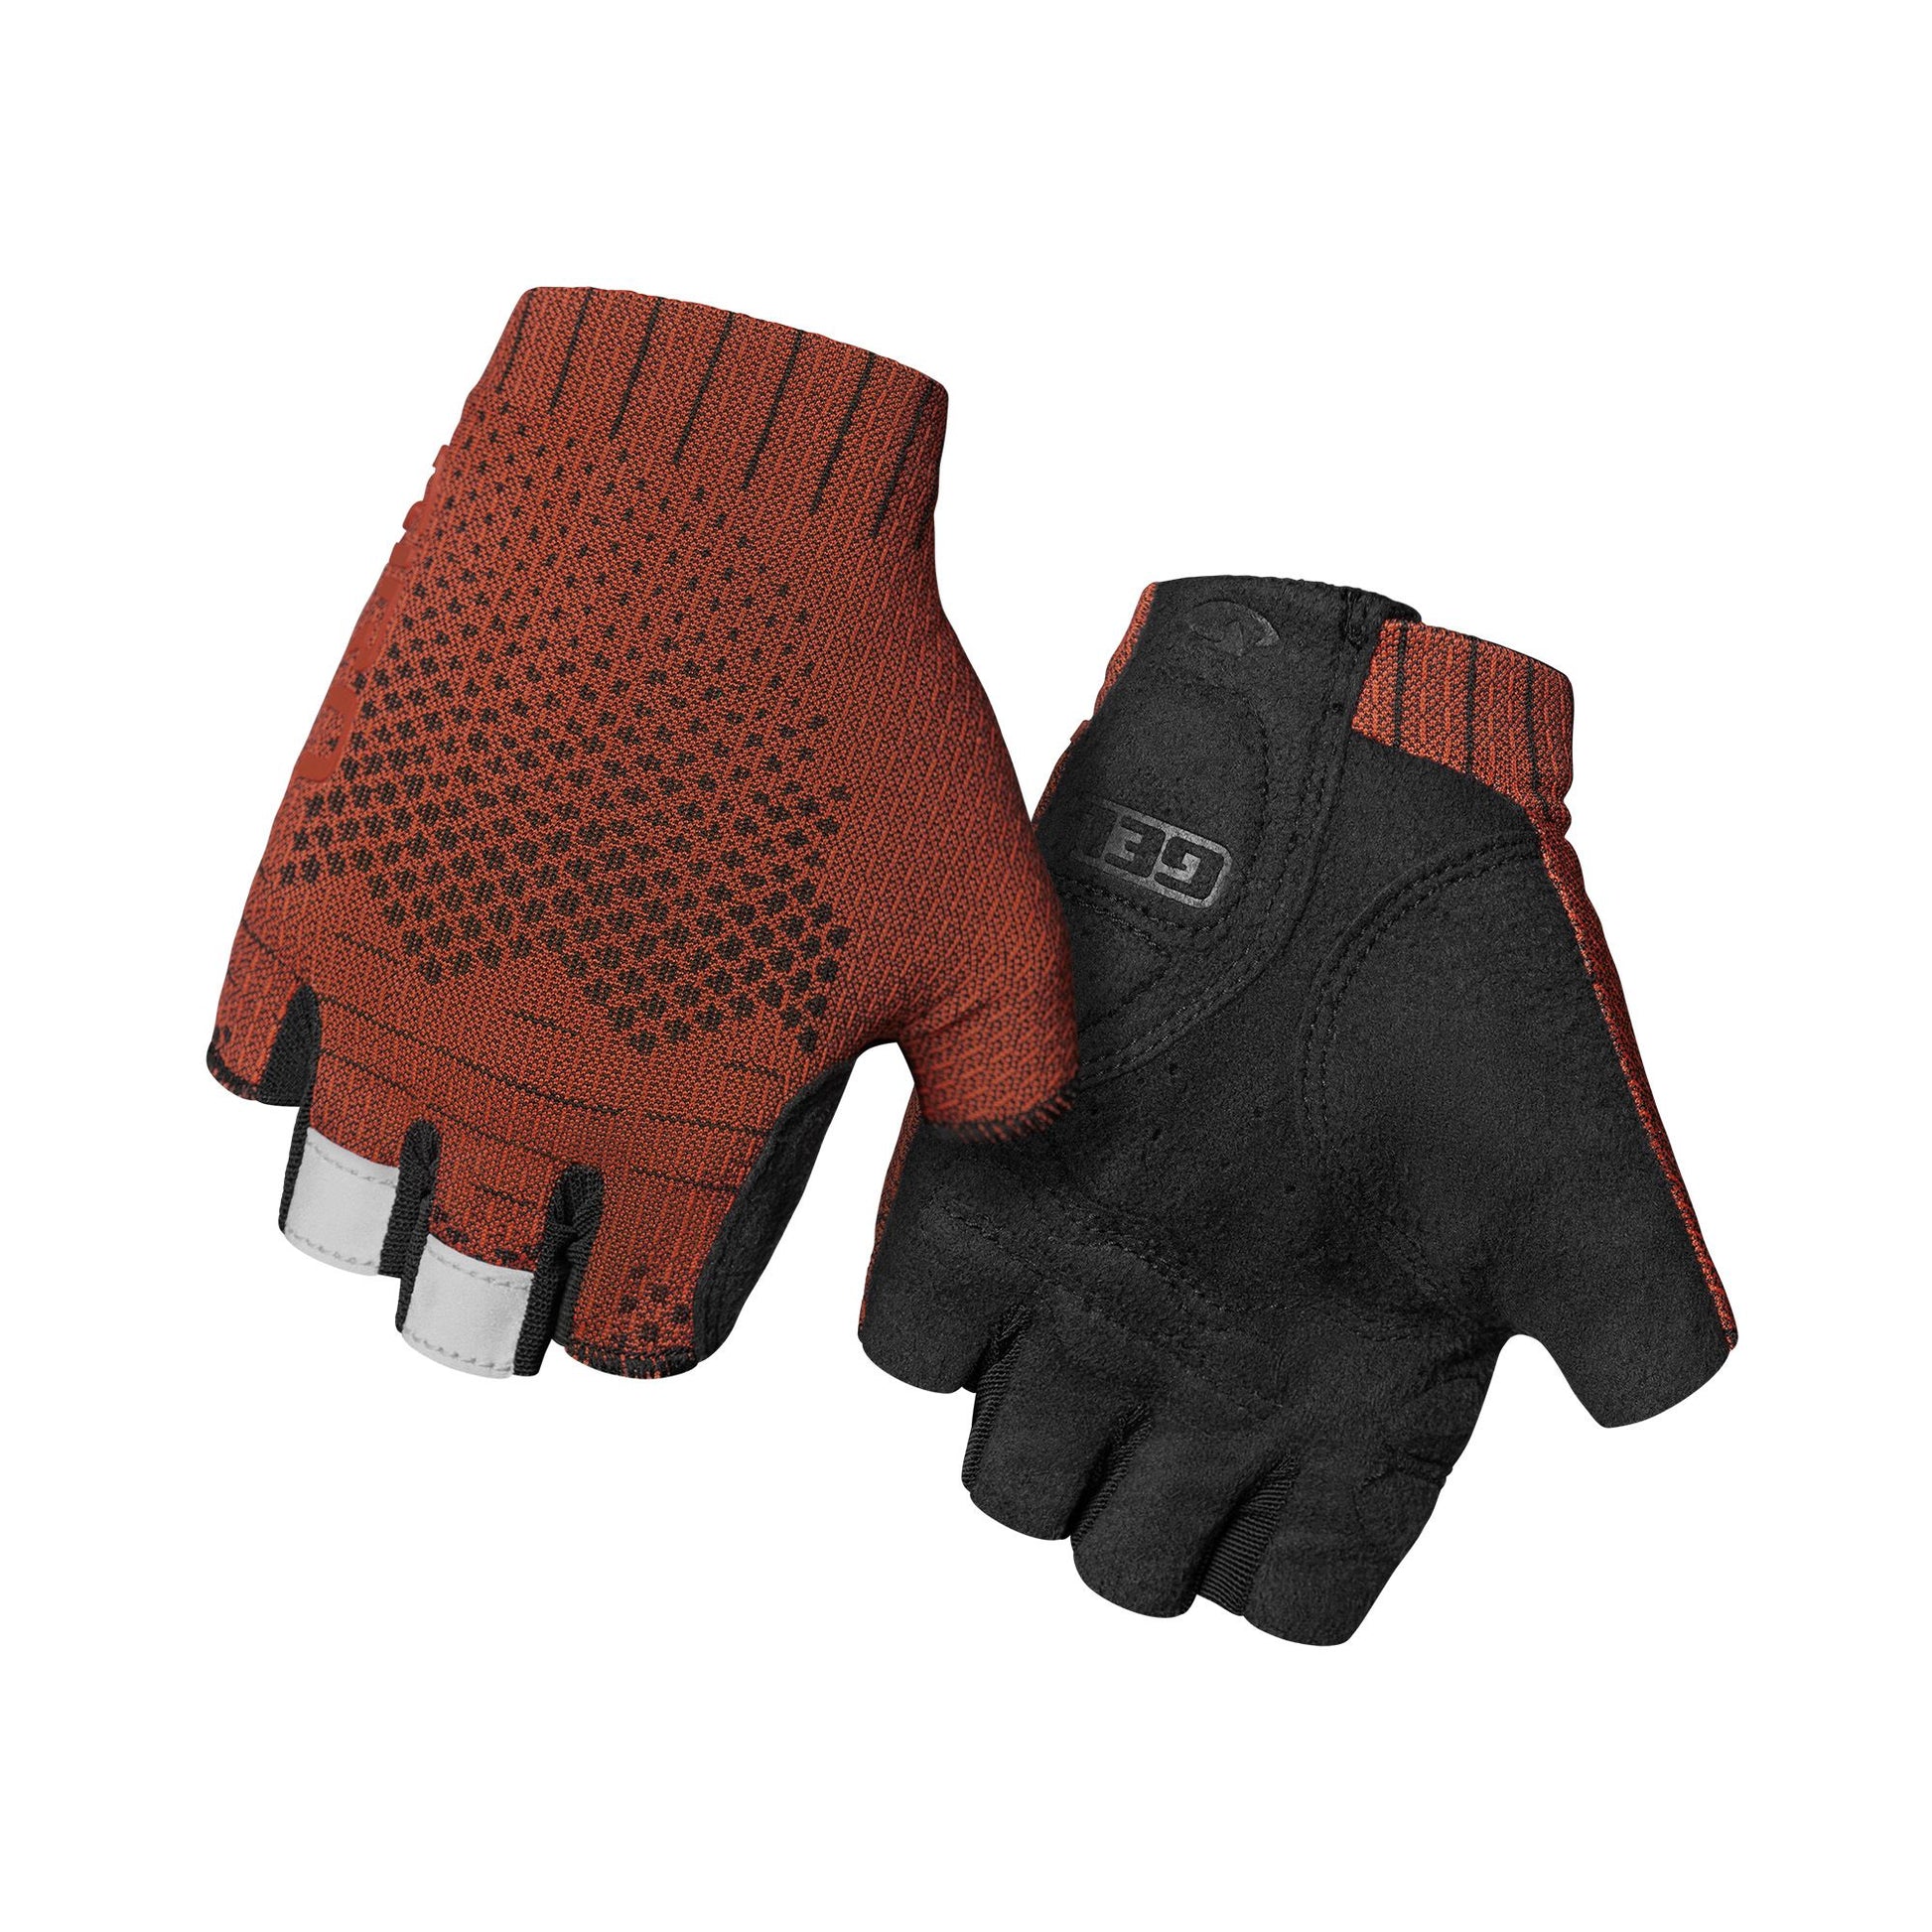 Giro Women's Xnetic Road Glove Ox Blood Bike Gloves